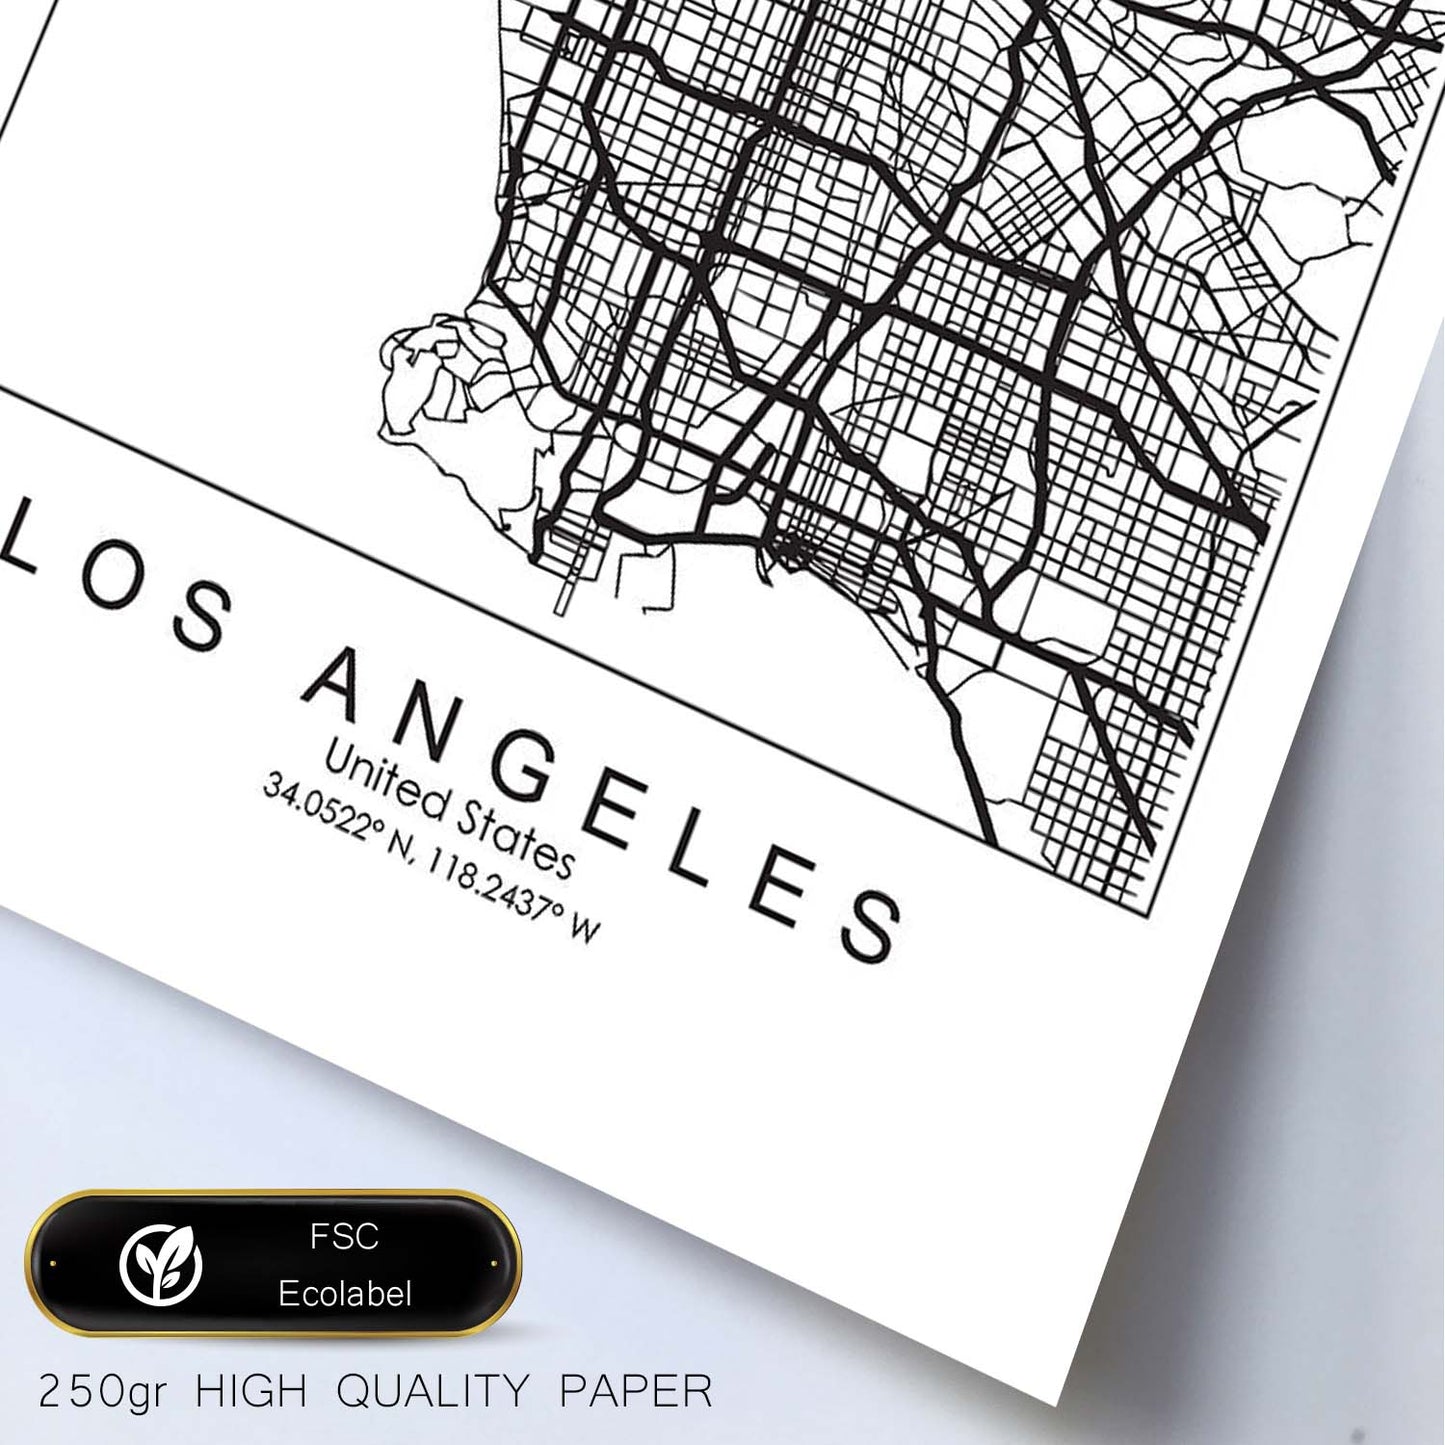 Poster con mapa de Los Angeles. Lámina de Estados Unidos, con imágenes de mapas y carreteras-Artwork-Nacnic-Nacnic Estudio SL